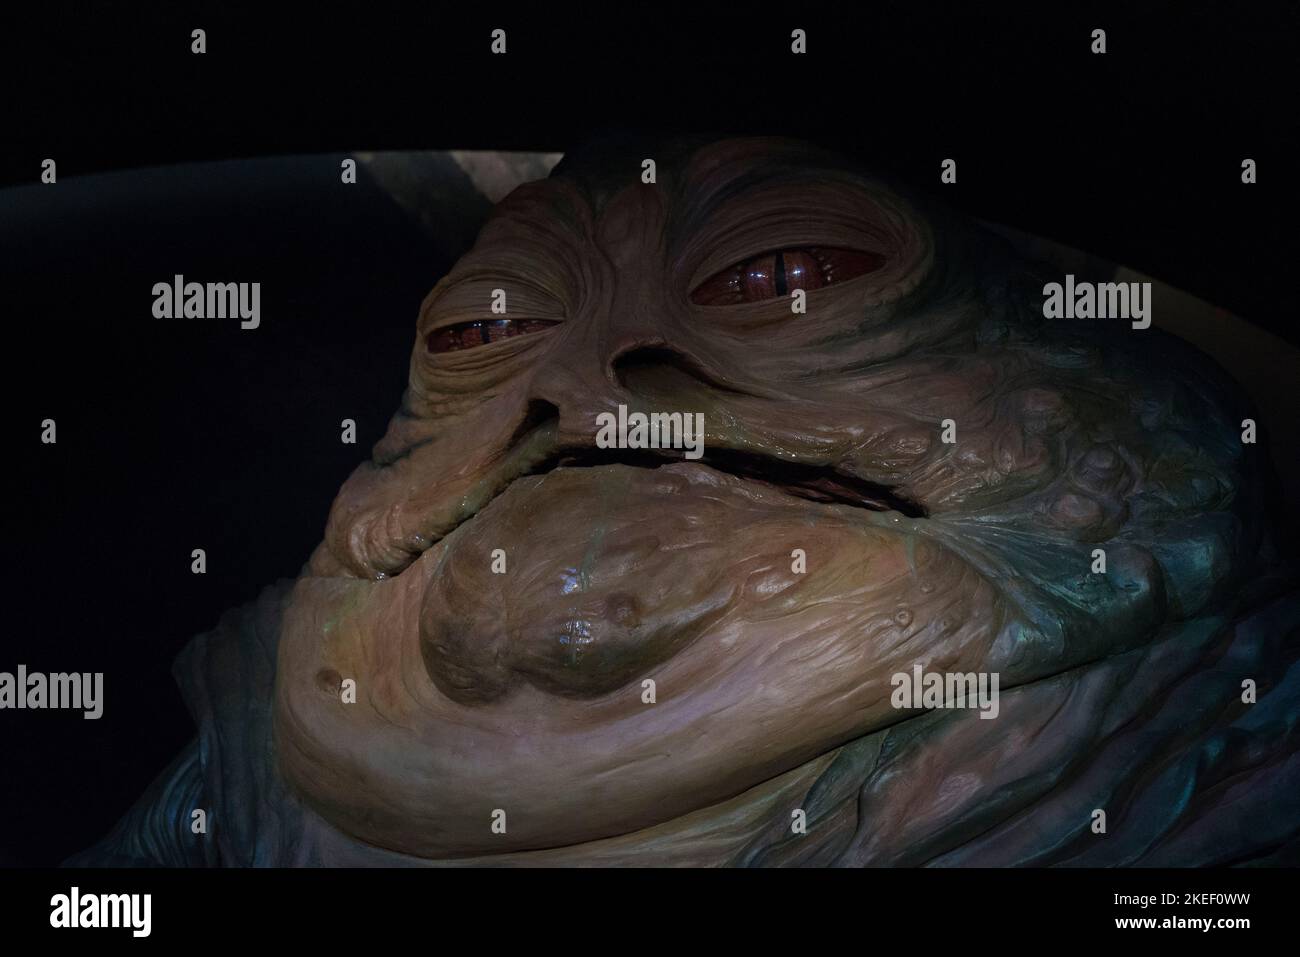 Jabba wax figure at Madame Tussaud's Stock Photo